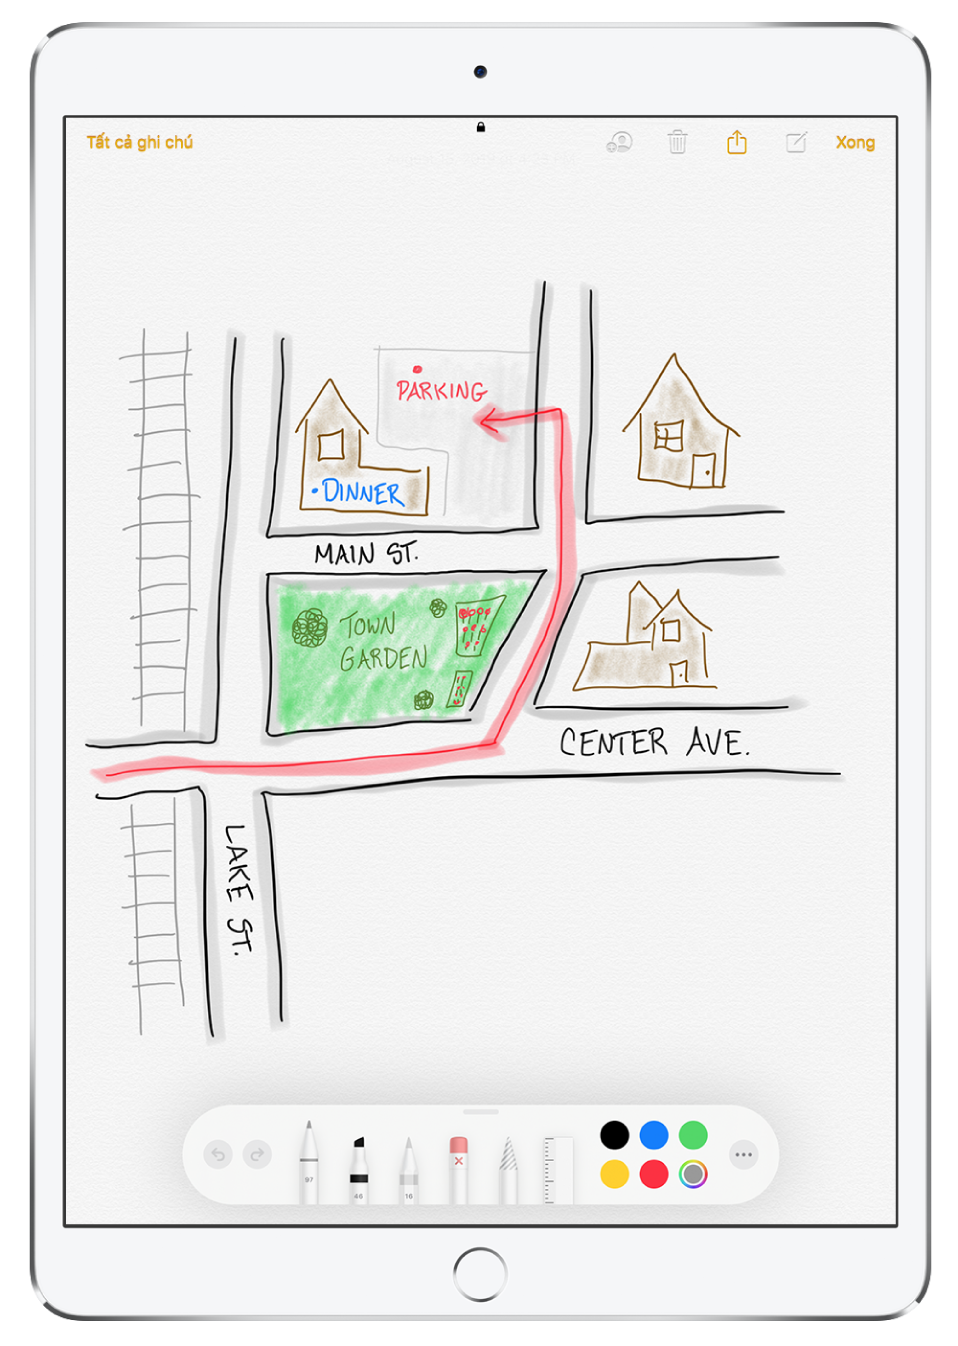 Một bản vẽ về khu vực xung quanh ở bên trong một ghi chú trong ứng dụng Ghi chú. Bản vẽ bao gồm các đường phố được gắn nhãn và một mũi tên màu đỏ chỉ đường đến chỗ đỗ xe còn trống. Ở cạnh dưới của màn hình là thanh công cụ Đánh dấu với một công cụ viết và một màu tùy chỉnh được chọn.